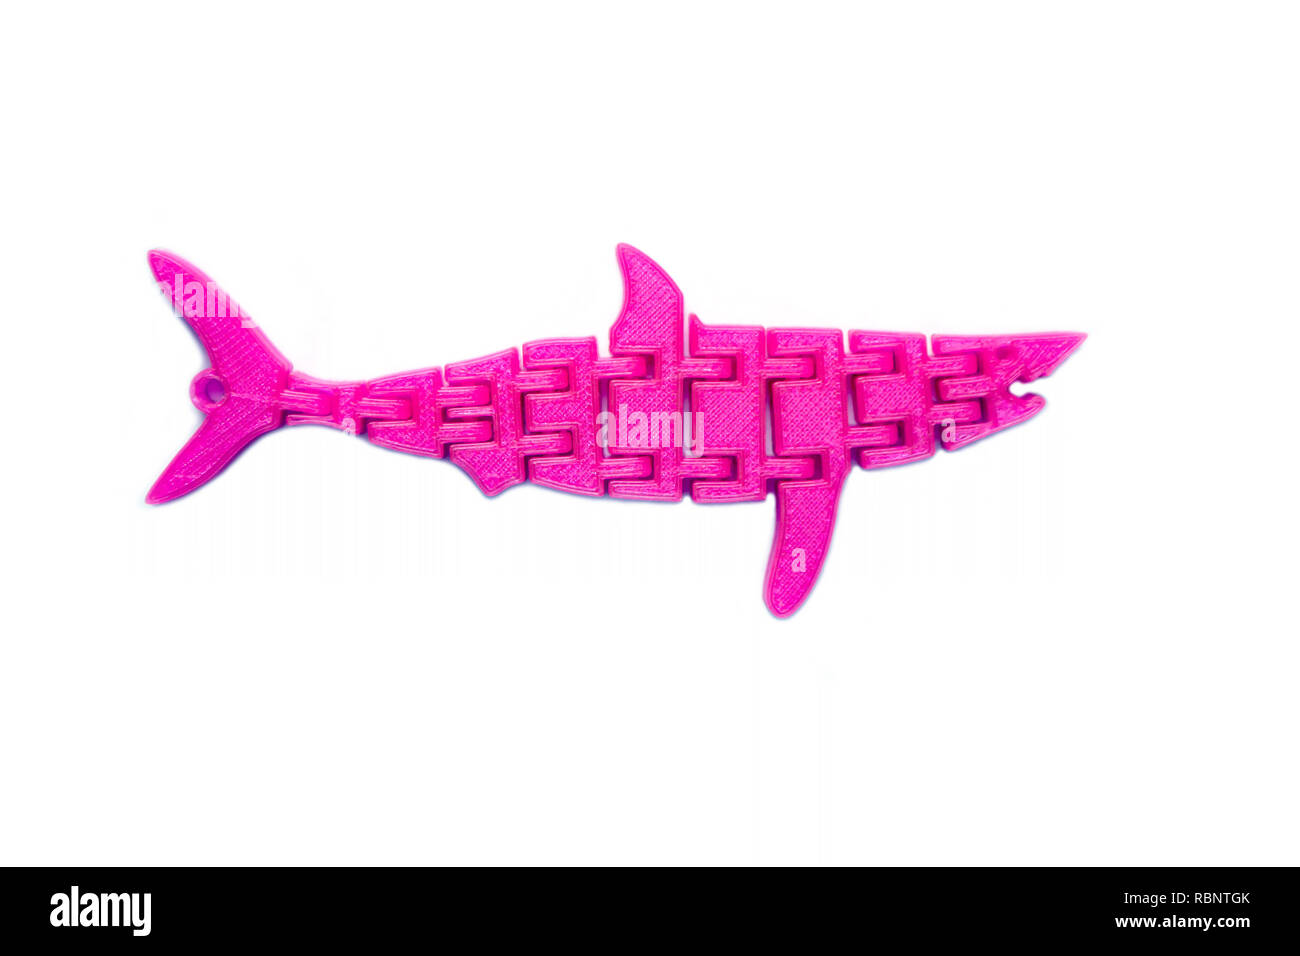 La lumière vive de l'objet rose en forme de poisson toy imprimé sur  imprimante 3d isolé sur fond blanc. Fused deposition modeling, FDM. La  technologie moderne Concept additif progressif pour l'impression 3D